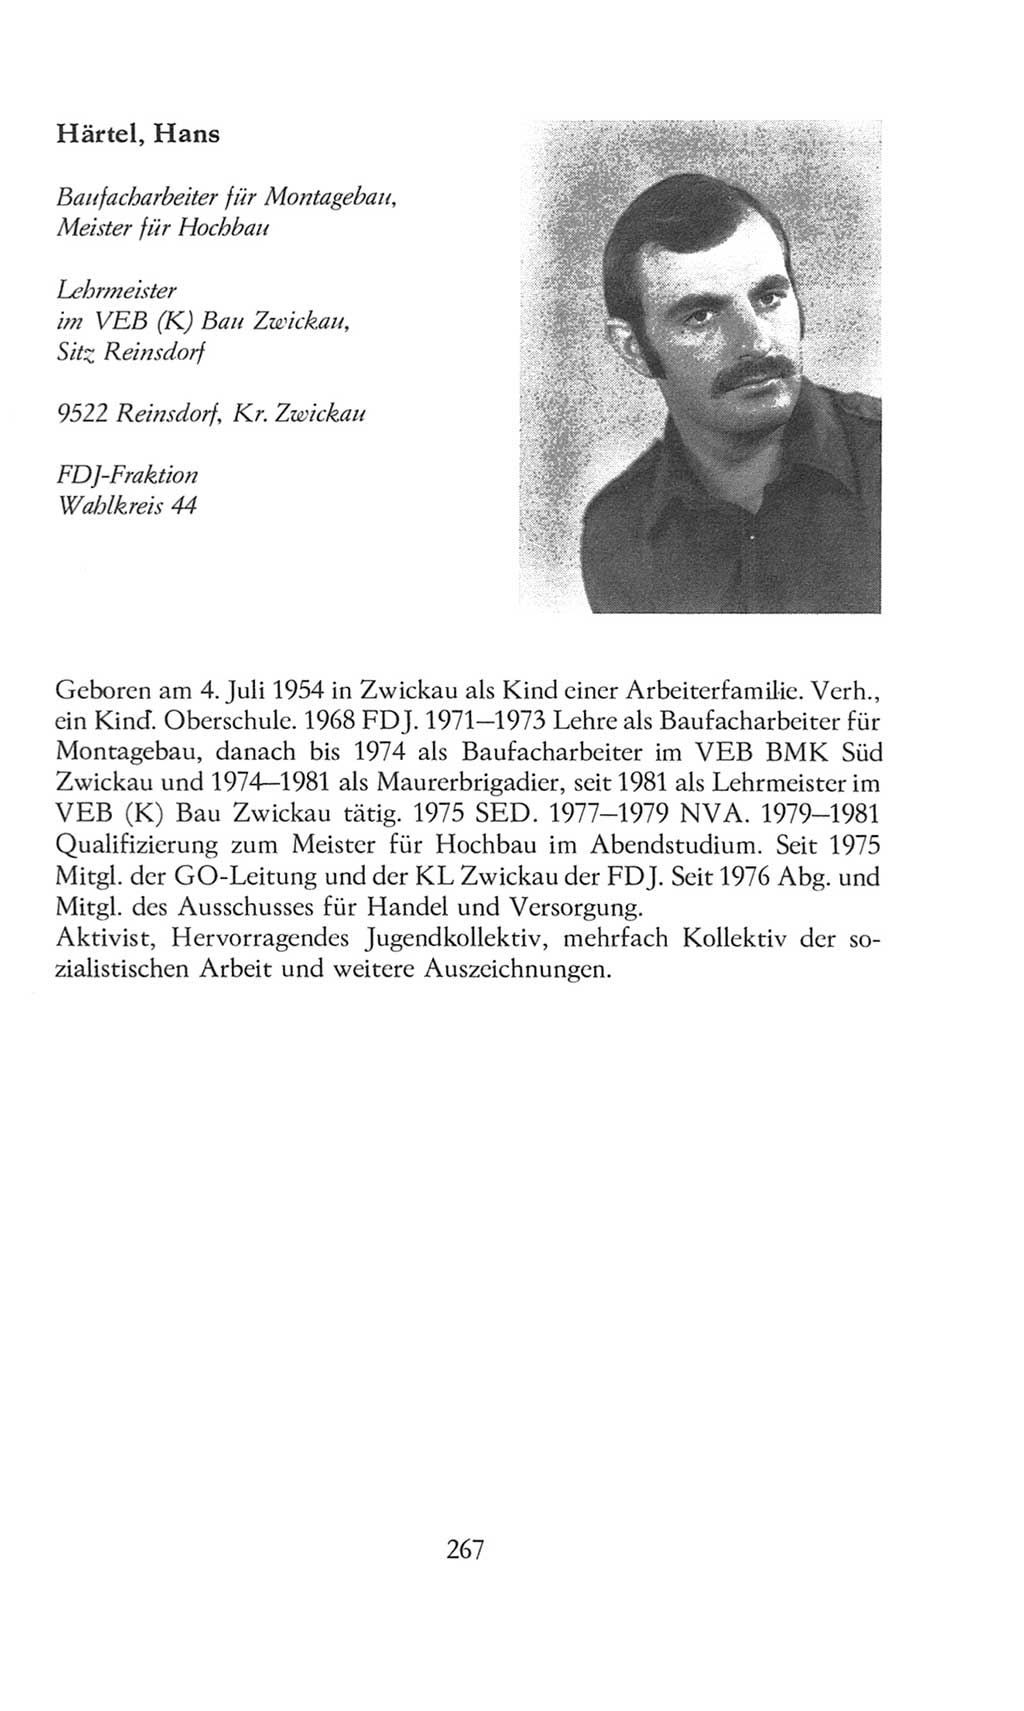 Volkskammer (VK) der Deutschen Demokratischen Republik (DDR), 8. Wahlperiode 1981-1986, Seite 267 (VK. DDR 8. WP. 1981-1986, S. 267)